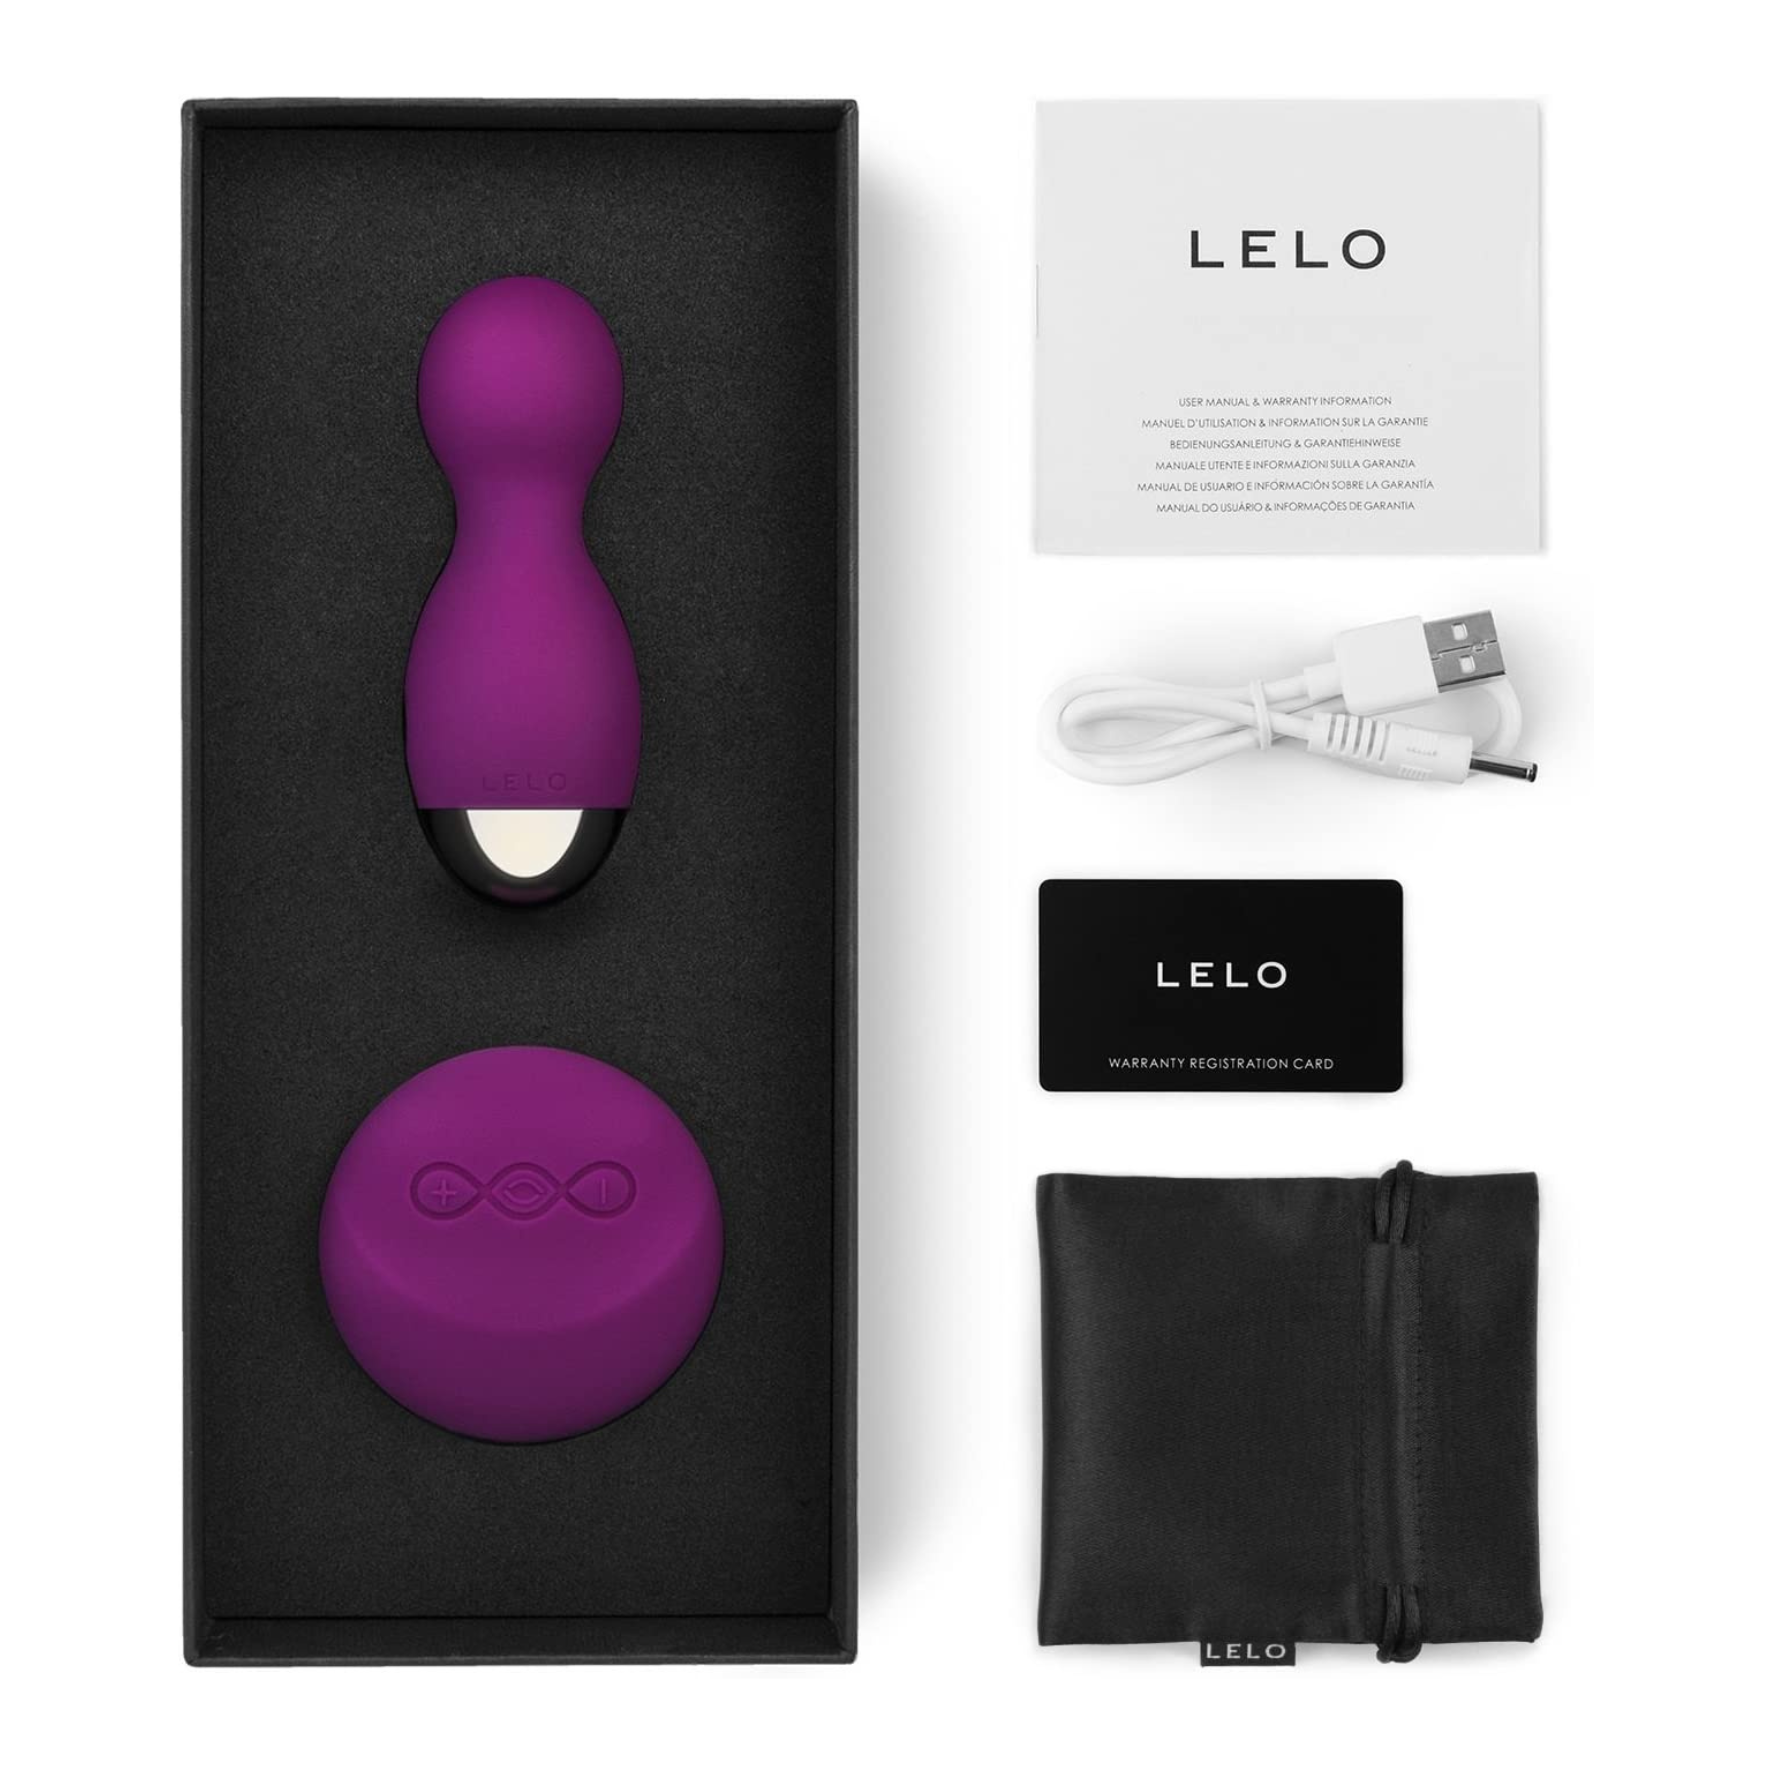 Įkraunami vibruojantys vaginaliniai kamuoliukai su pulteliu “Hula Beads” - violetiniai (galima rinktis spalvą)